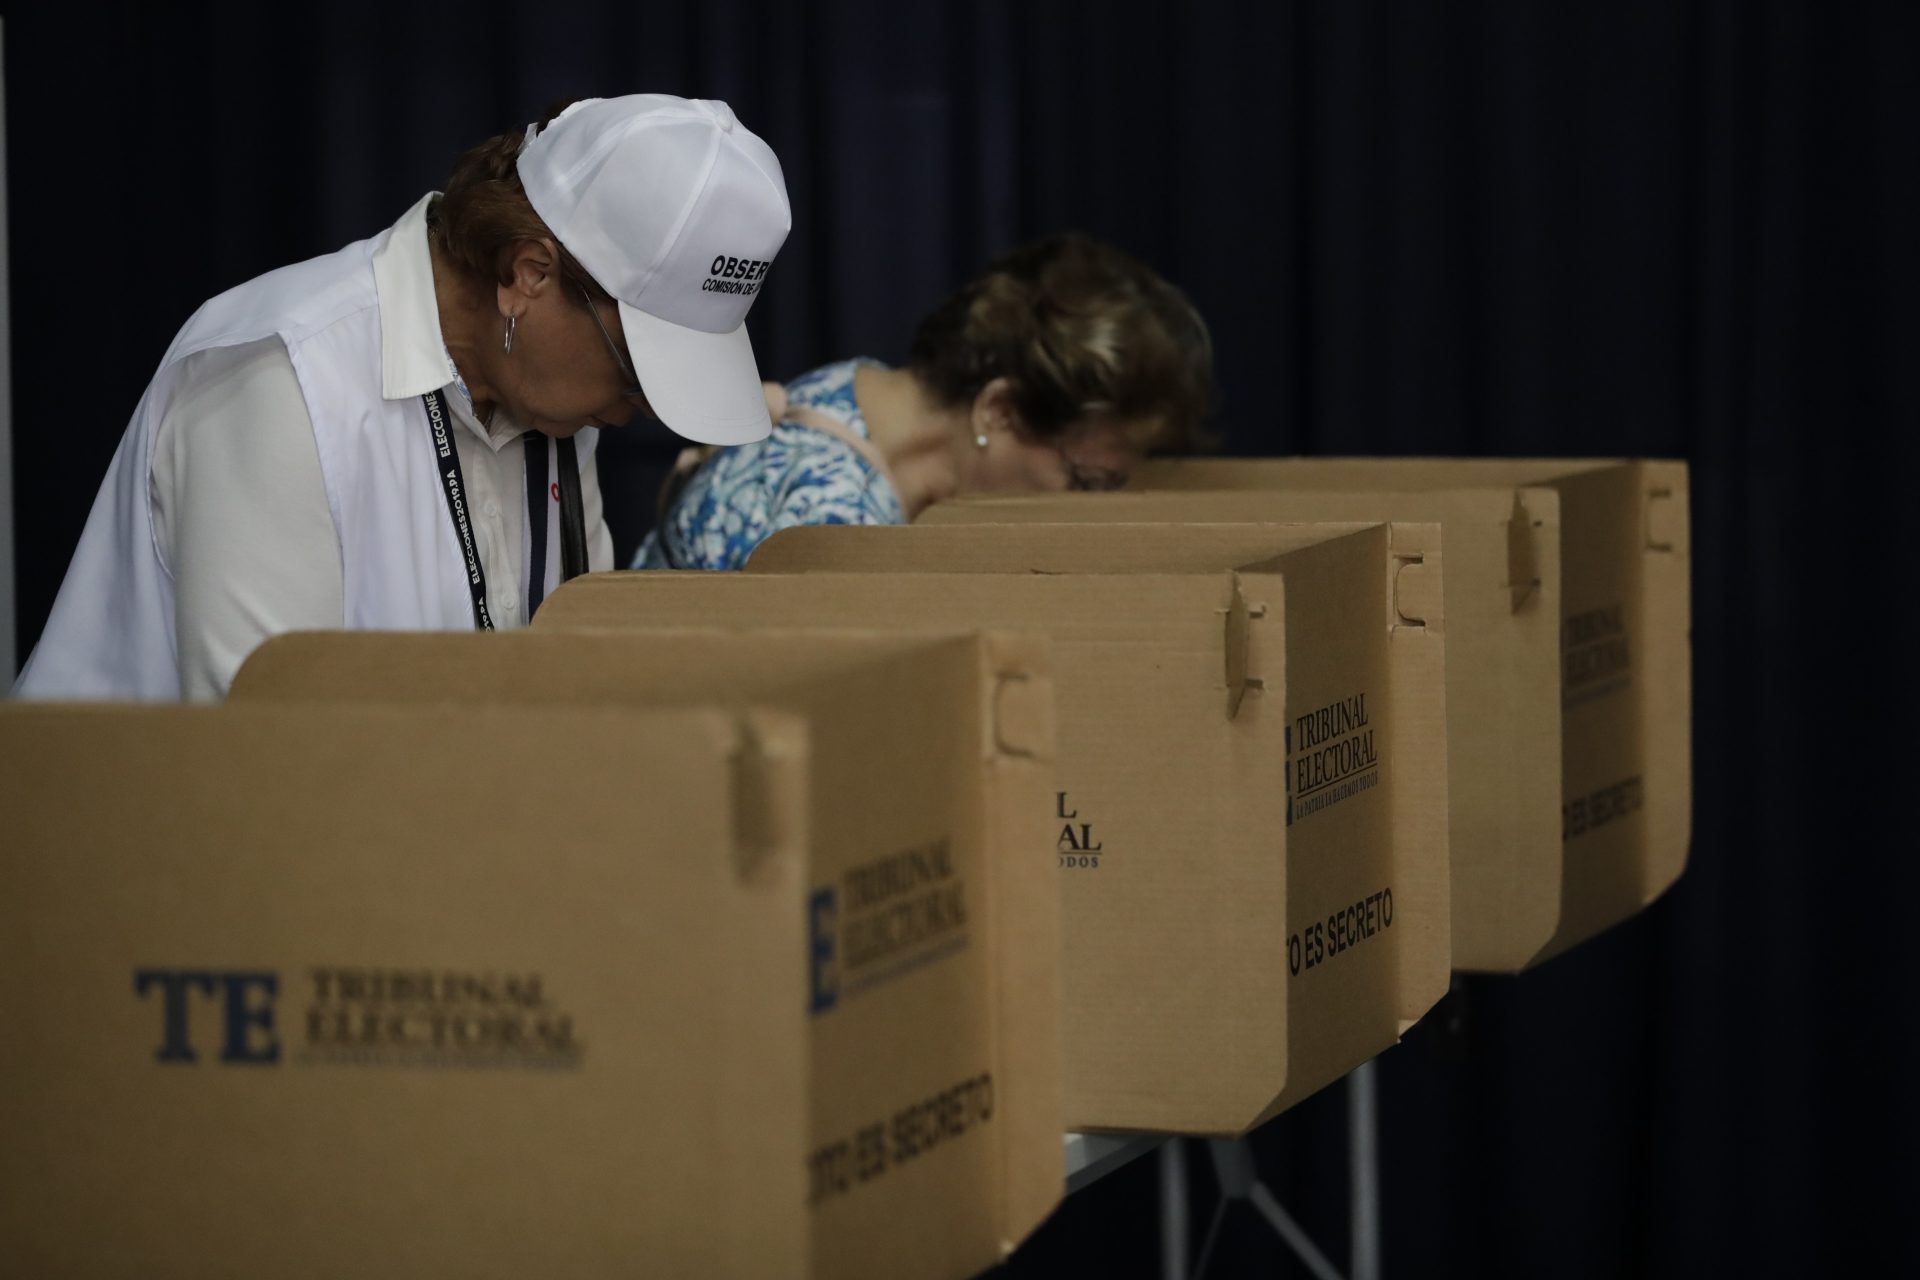 Personas votan durante una jornada electoral en Ciudad de Panamá (Panamá), en una fotografía de archivo. EFE/Bienvenido Velasco